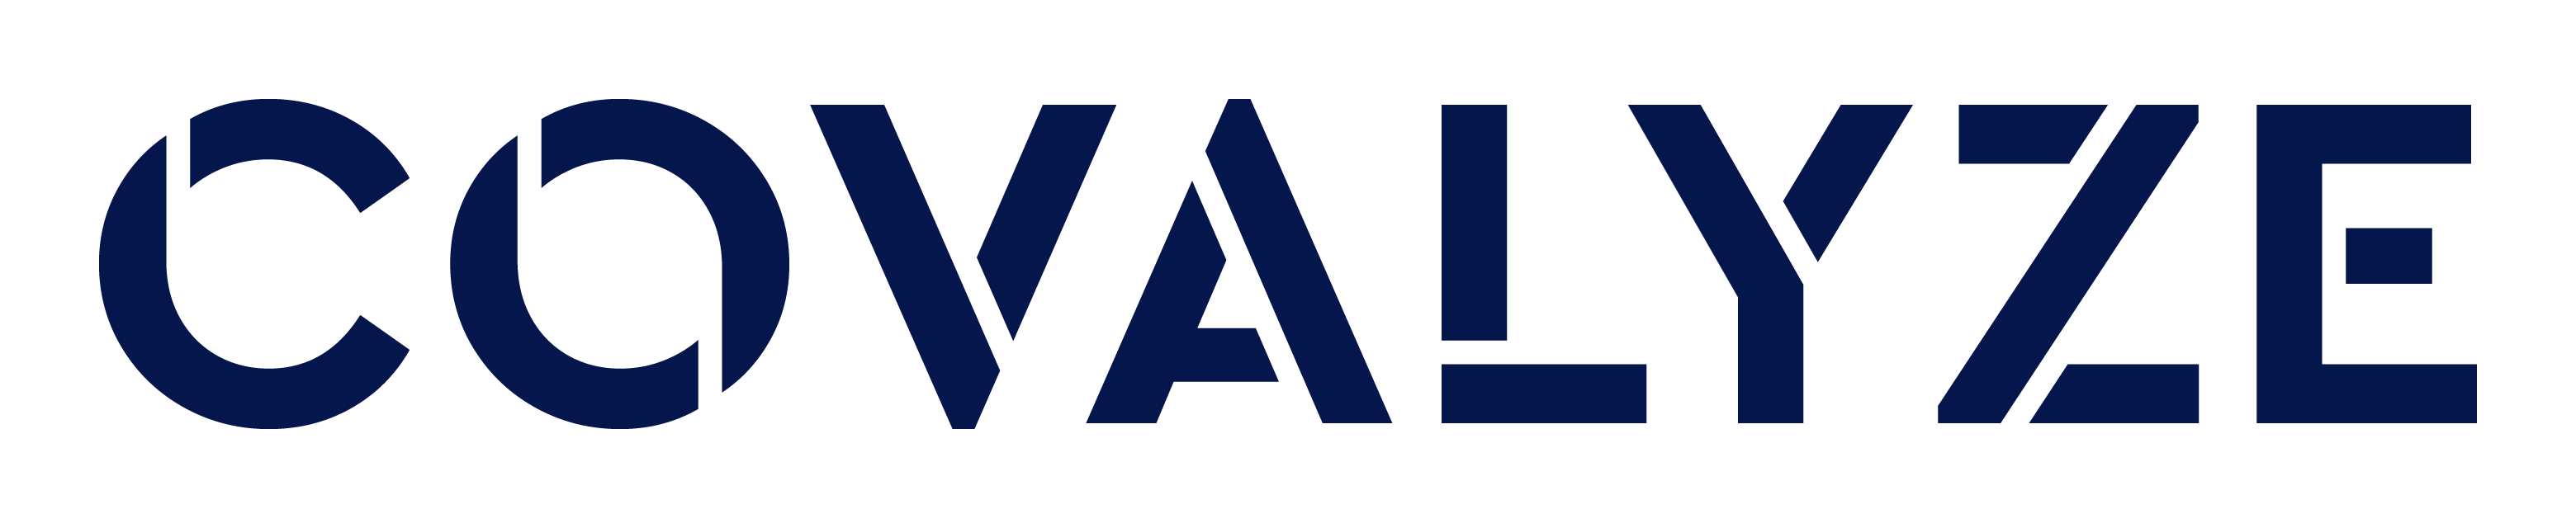 Company logo: